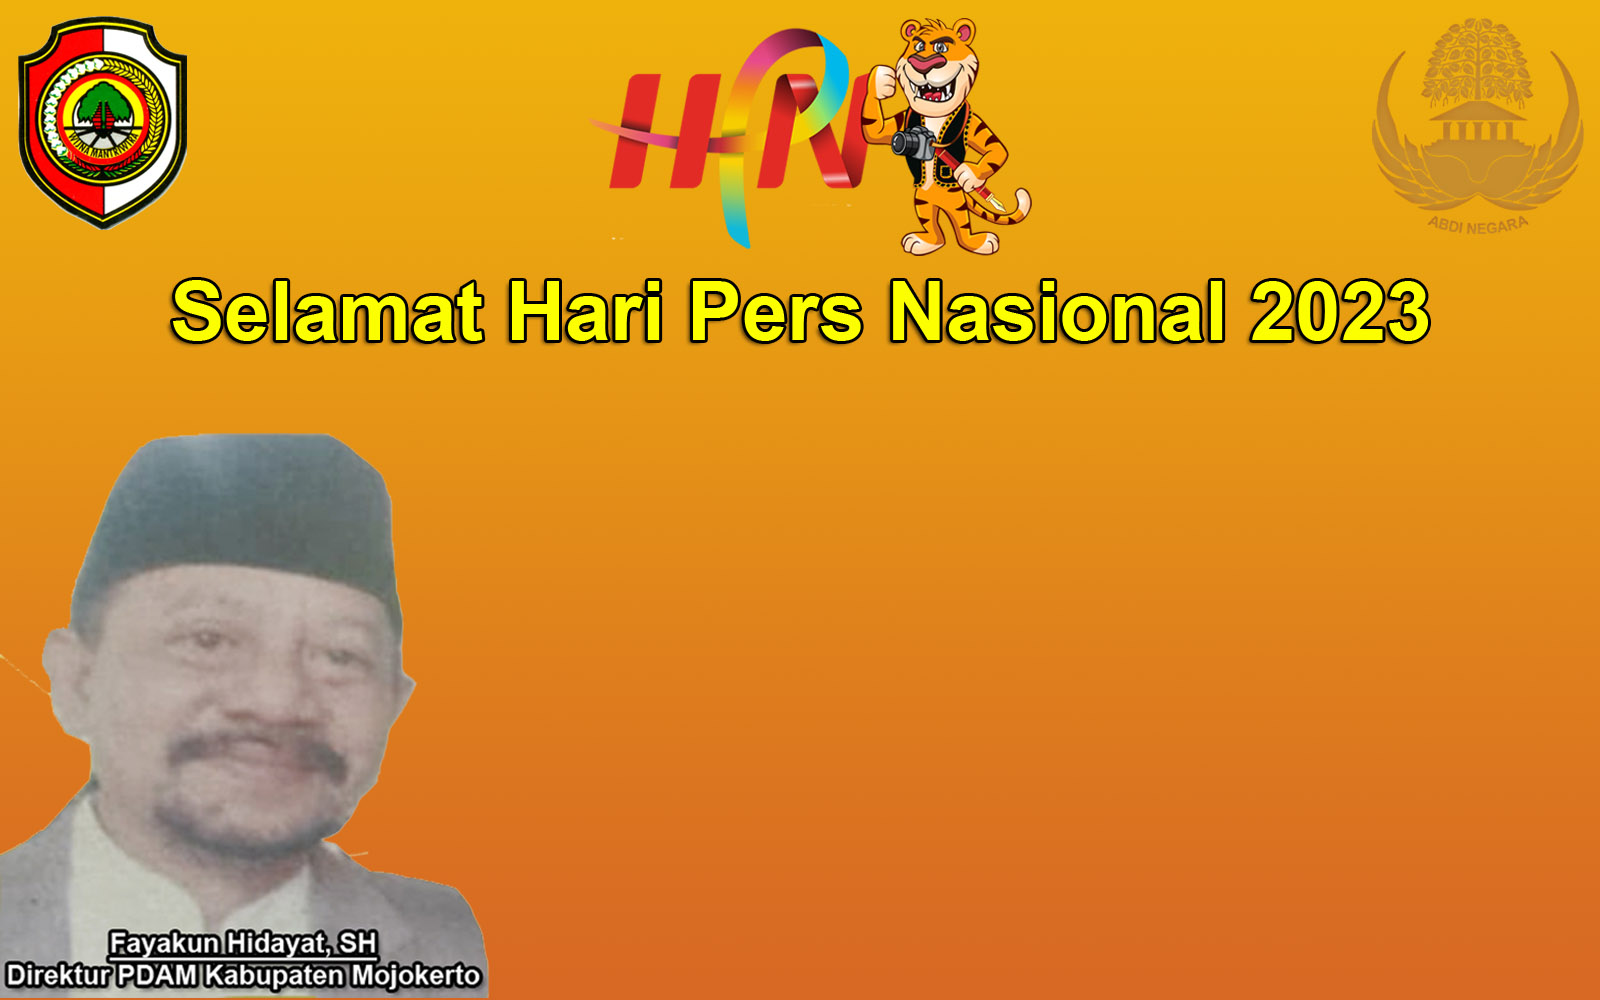 9 Februari 2023, PDAM Kabupaten Mojokerto Mengucapkan Selamat Hari Pers Nasional